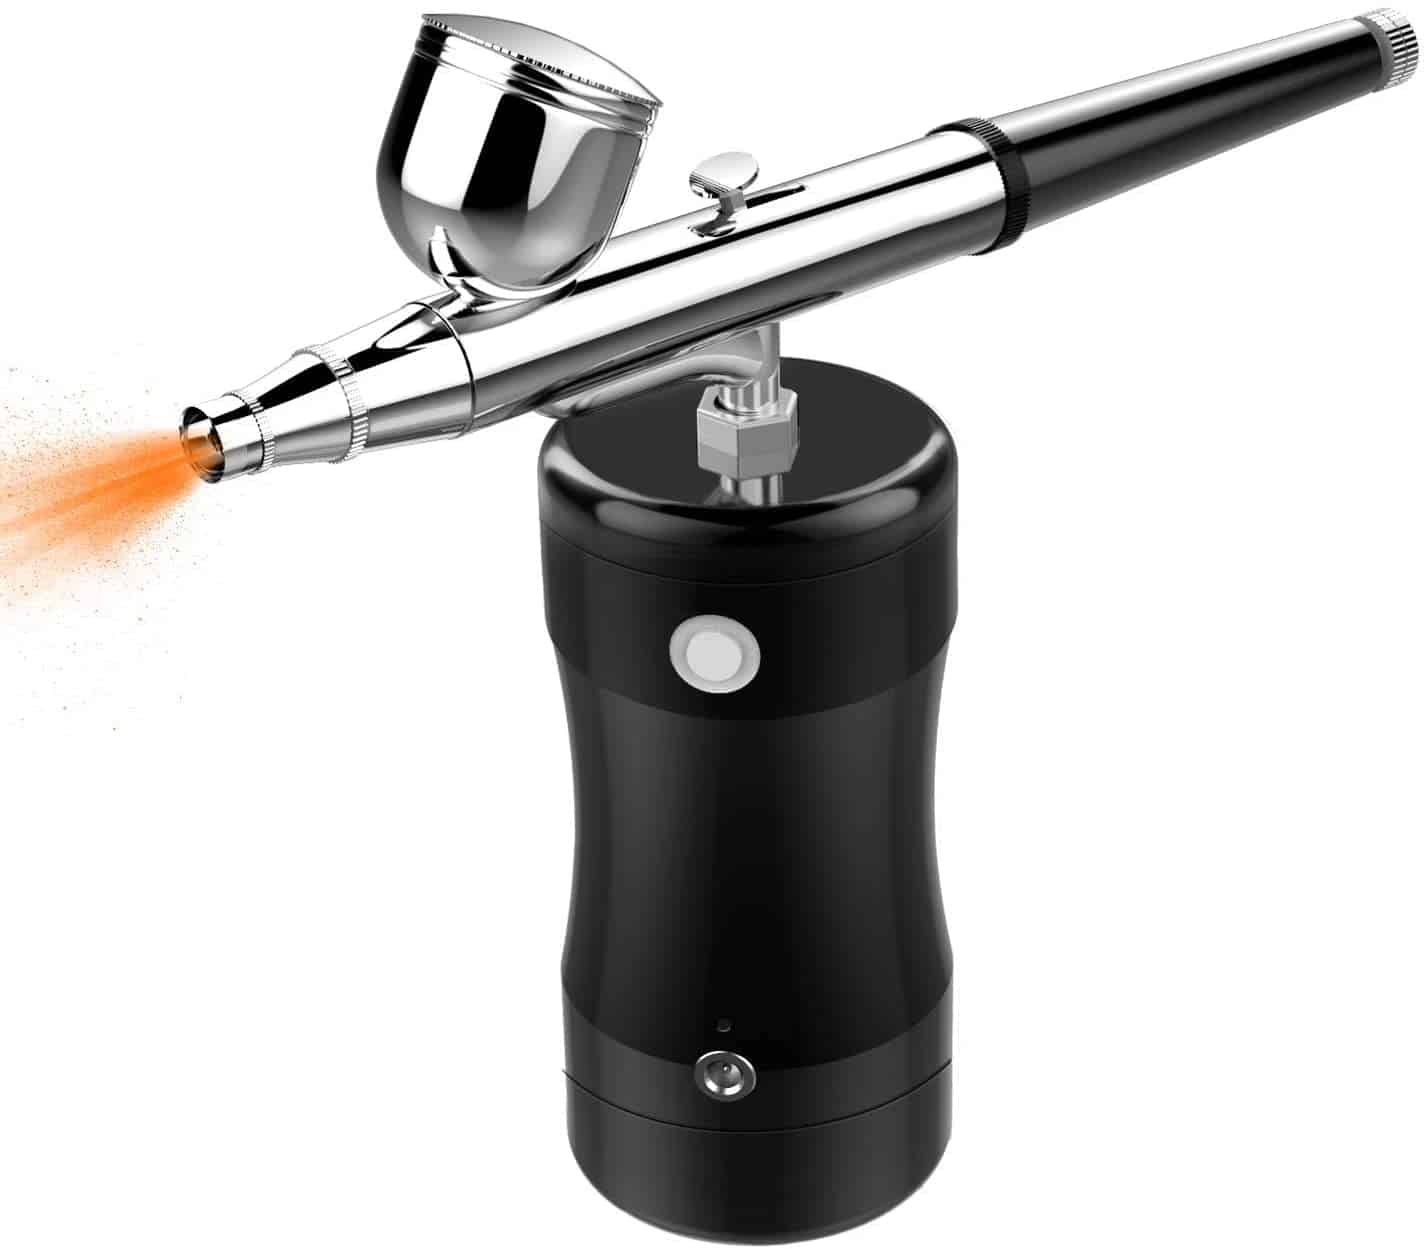 COSSCCI Portable Mini Air Brush Spray Gun with Compressor